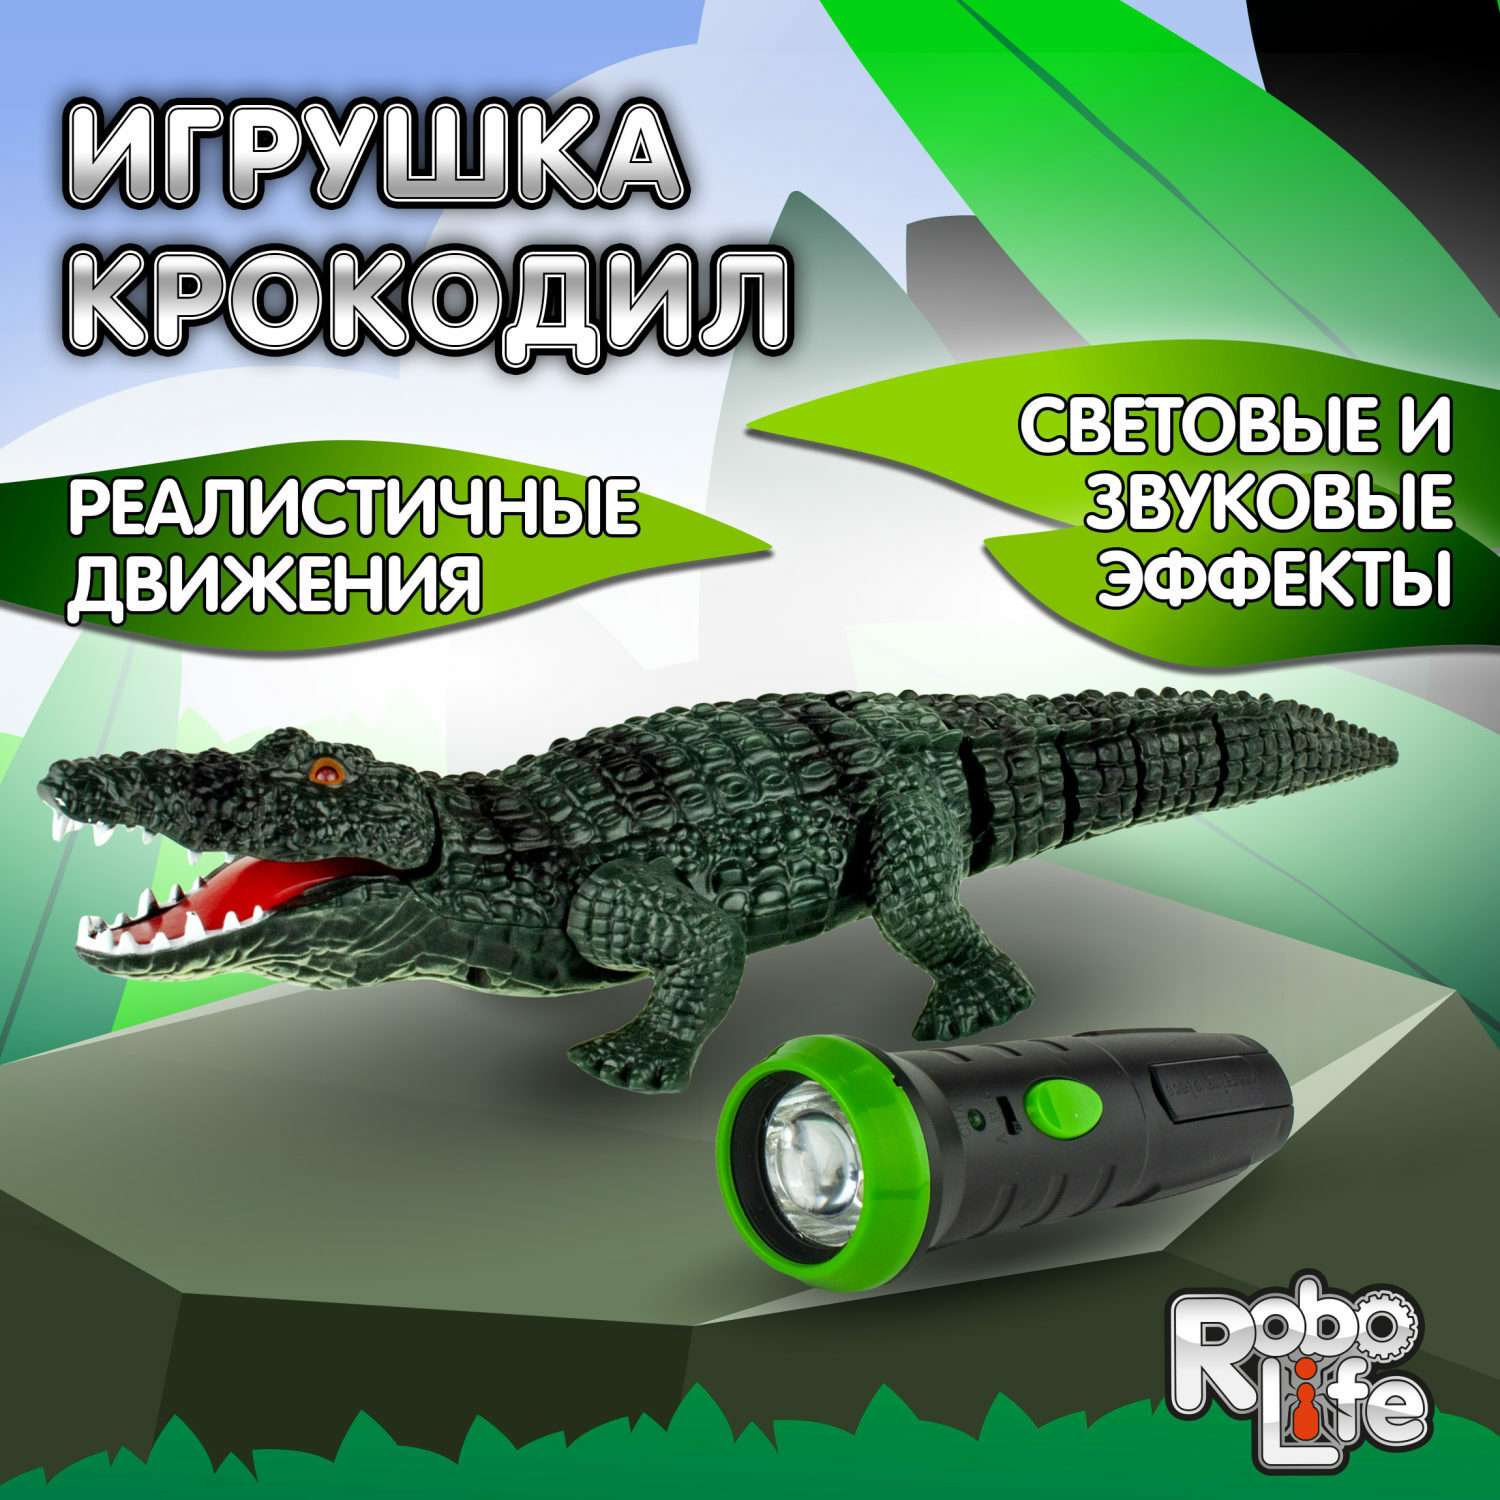 Интерактивная игрушка Robo Life Робо-Крокодил на ИК управлении со звуковыми световыми и эффектами движения - фото 1